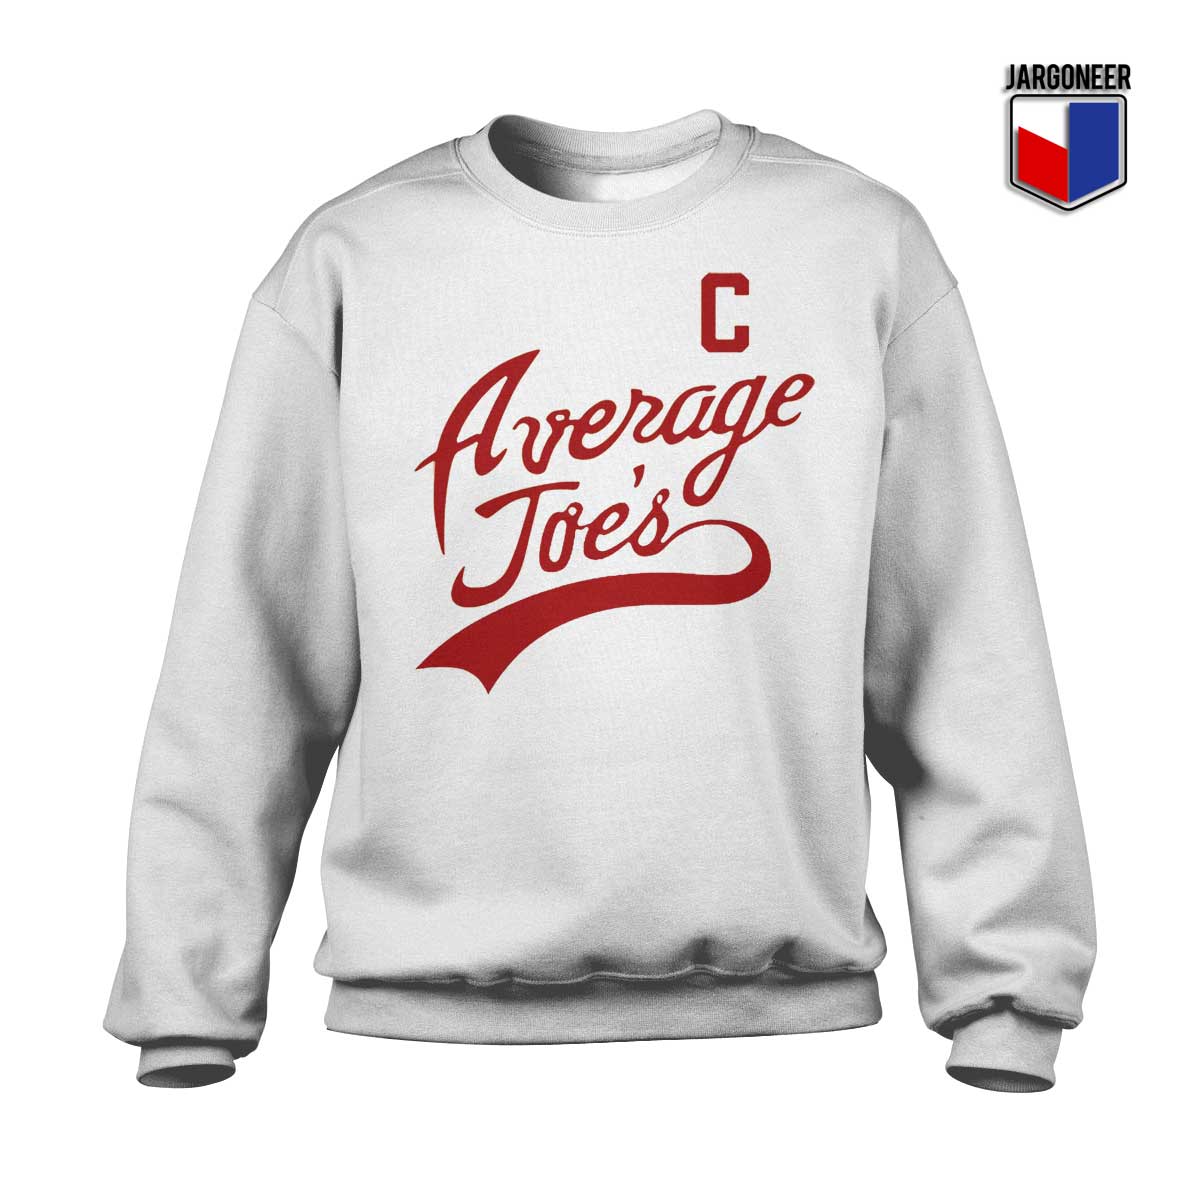 Average Joes Sweatshirt - Shop Unique Graphic Cool Shirt Designs